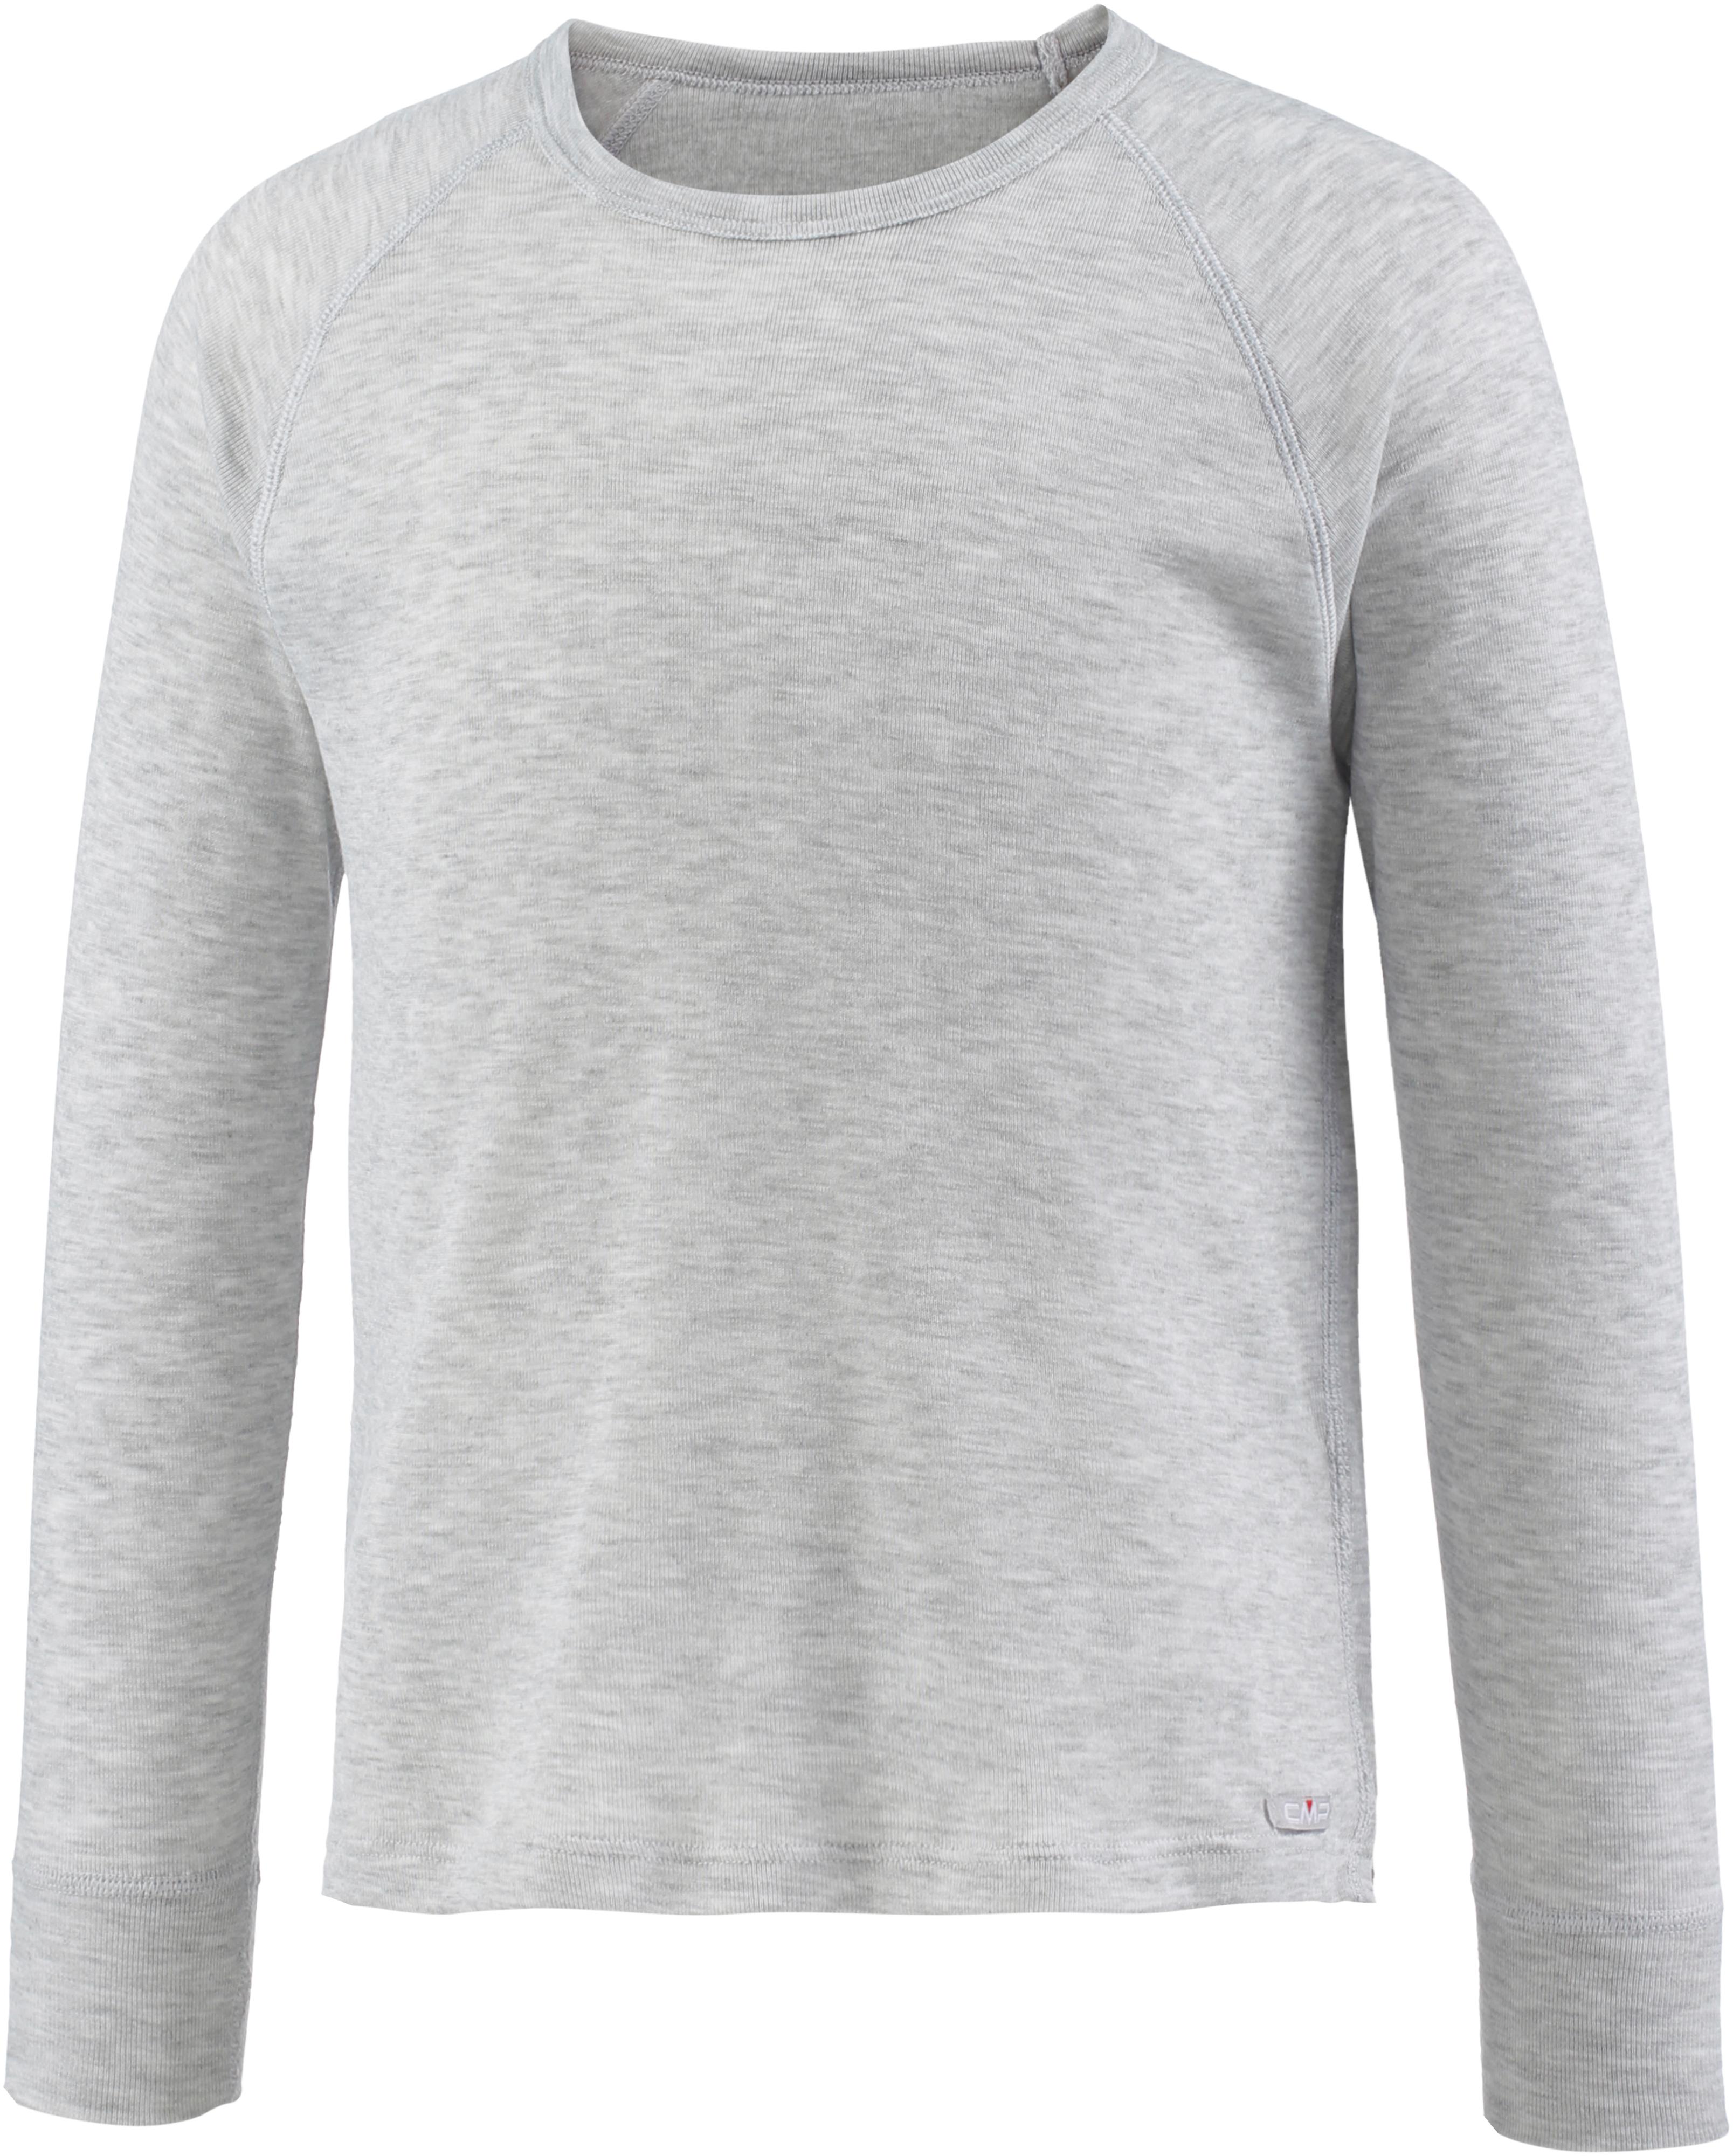 Jungen Shop von Unterhemd grigio CMP SportScheck Online kaufen im melange